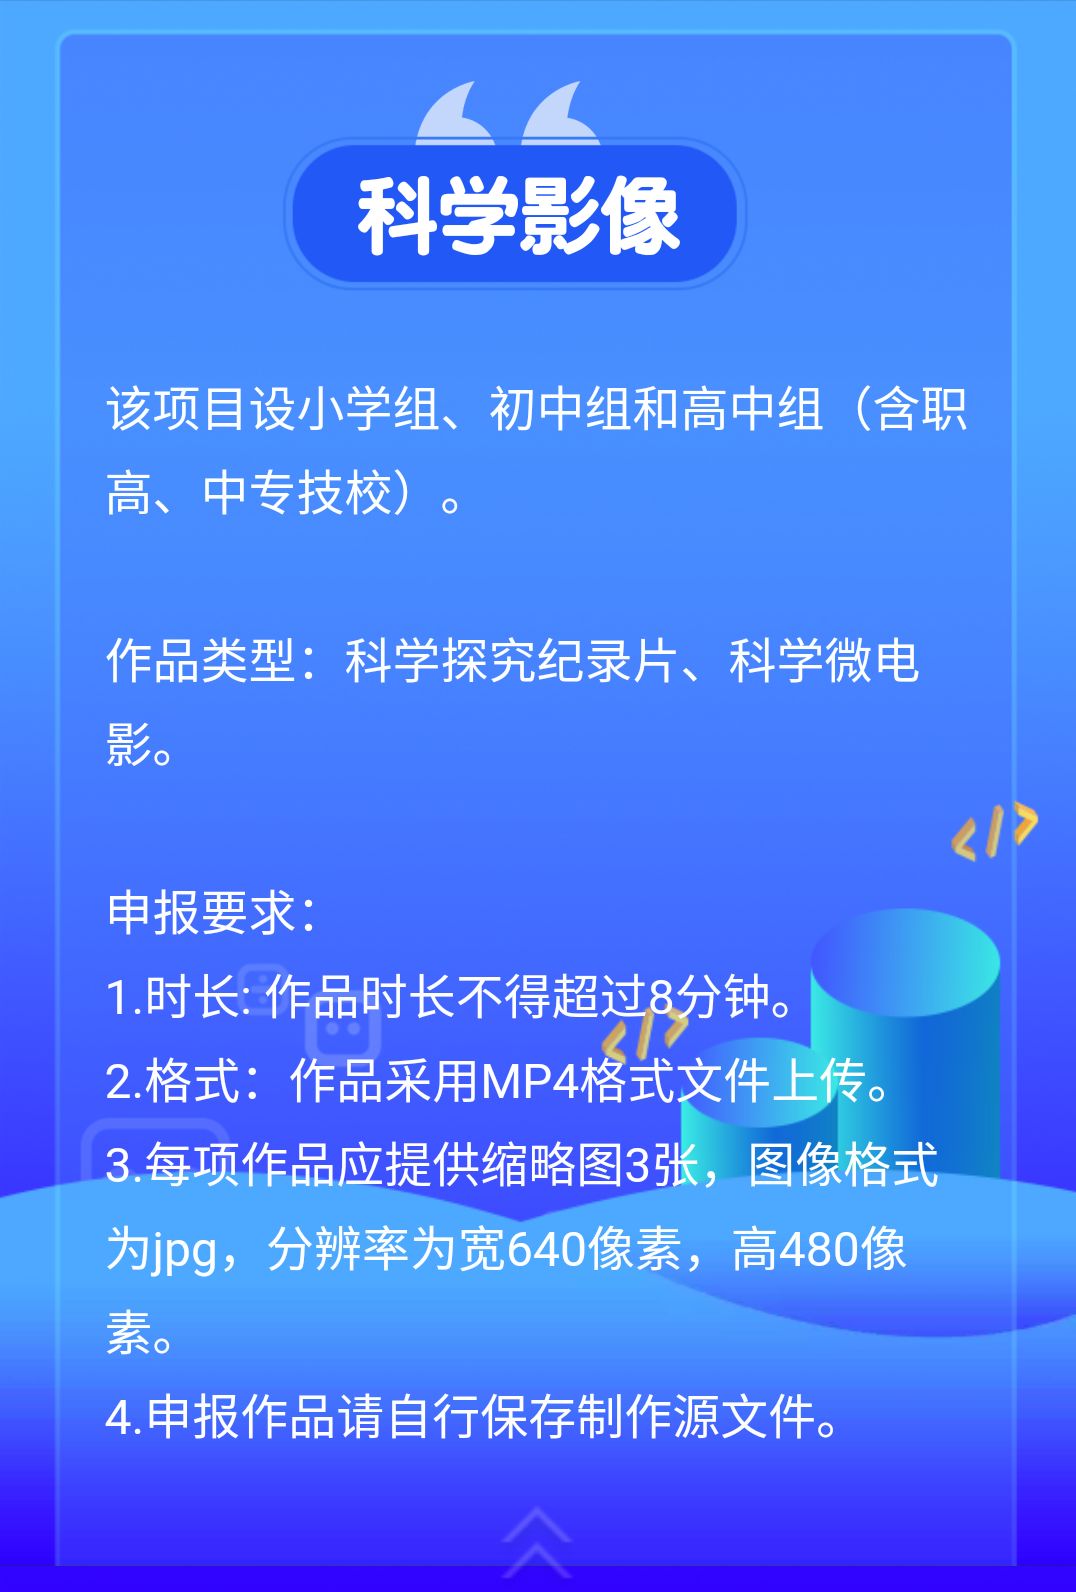 【参赛规则】《2018年浙江省中小学信息技术创作大赛》开赛啦！